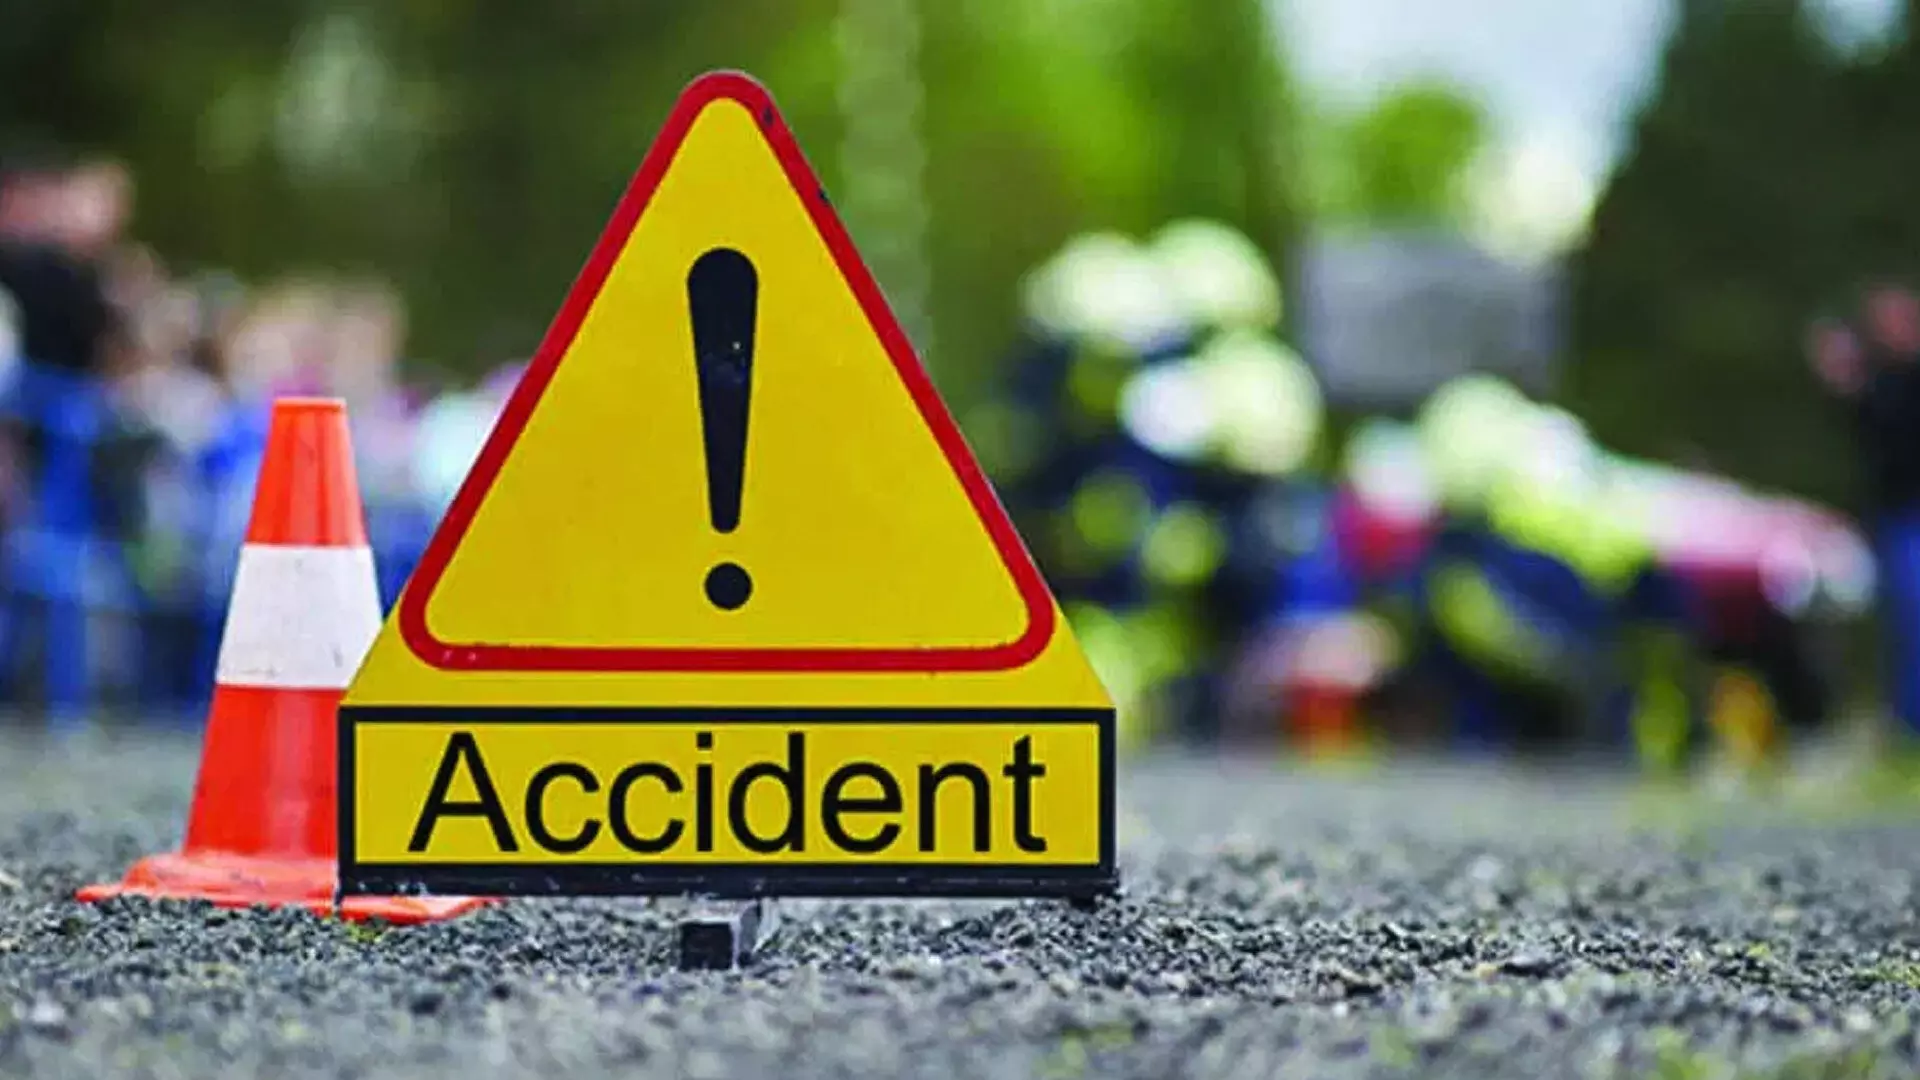 Uttar Pradesh: सड़क दुर्घटना में वाहन चालक की मौत, सहायक घायल